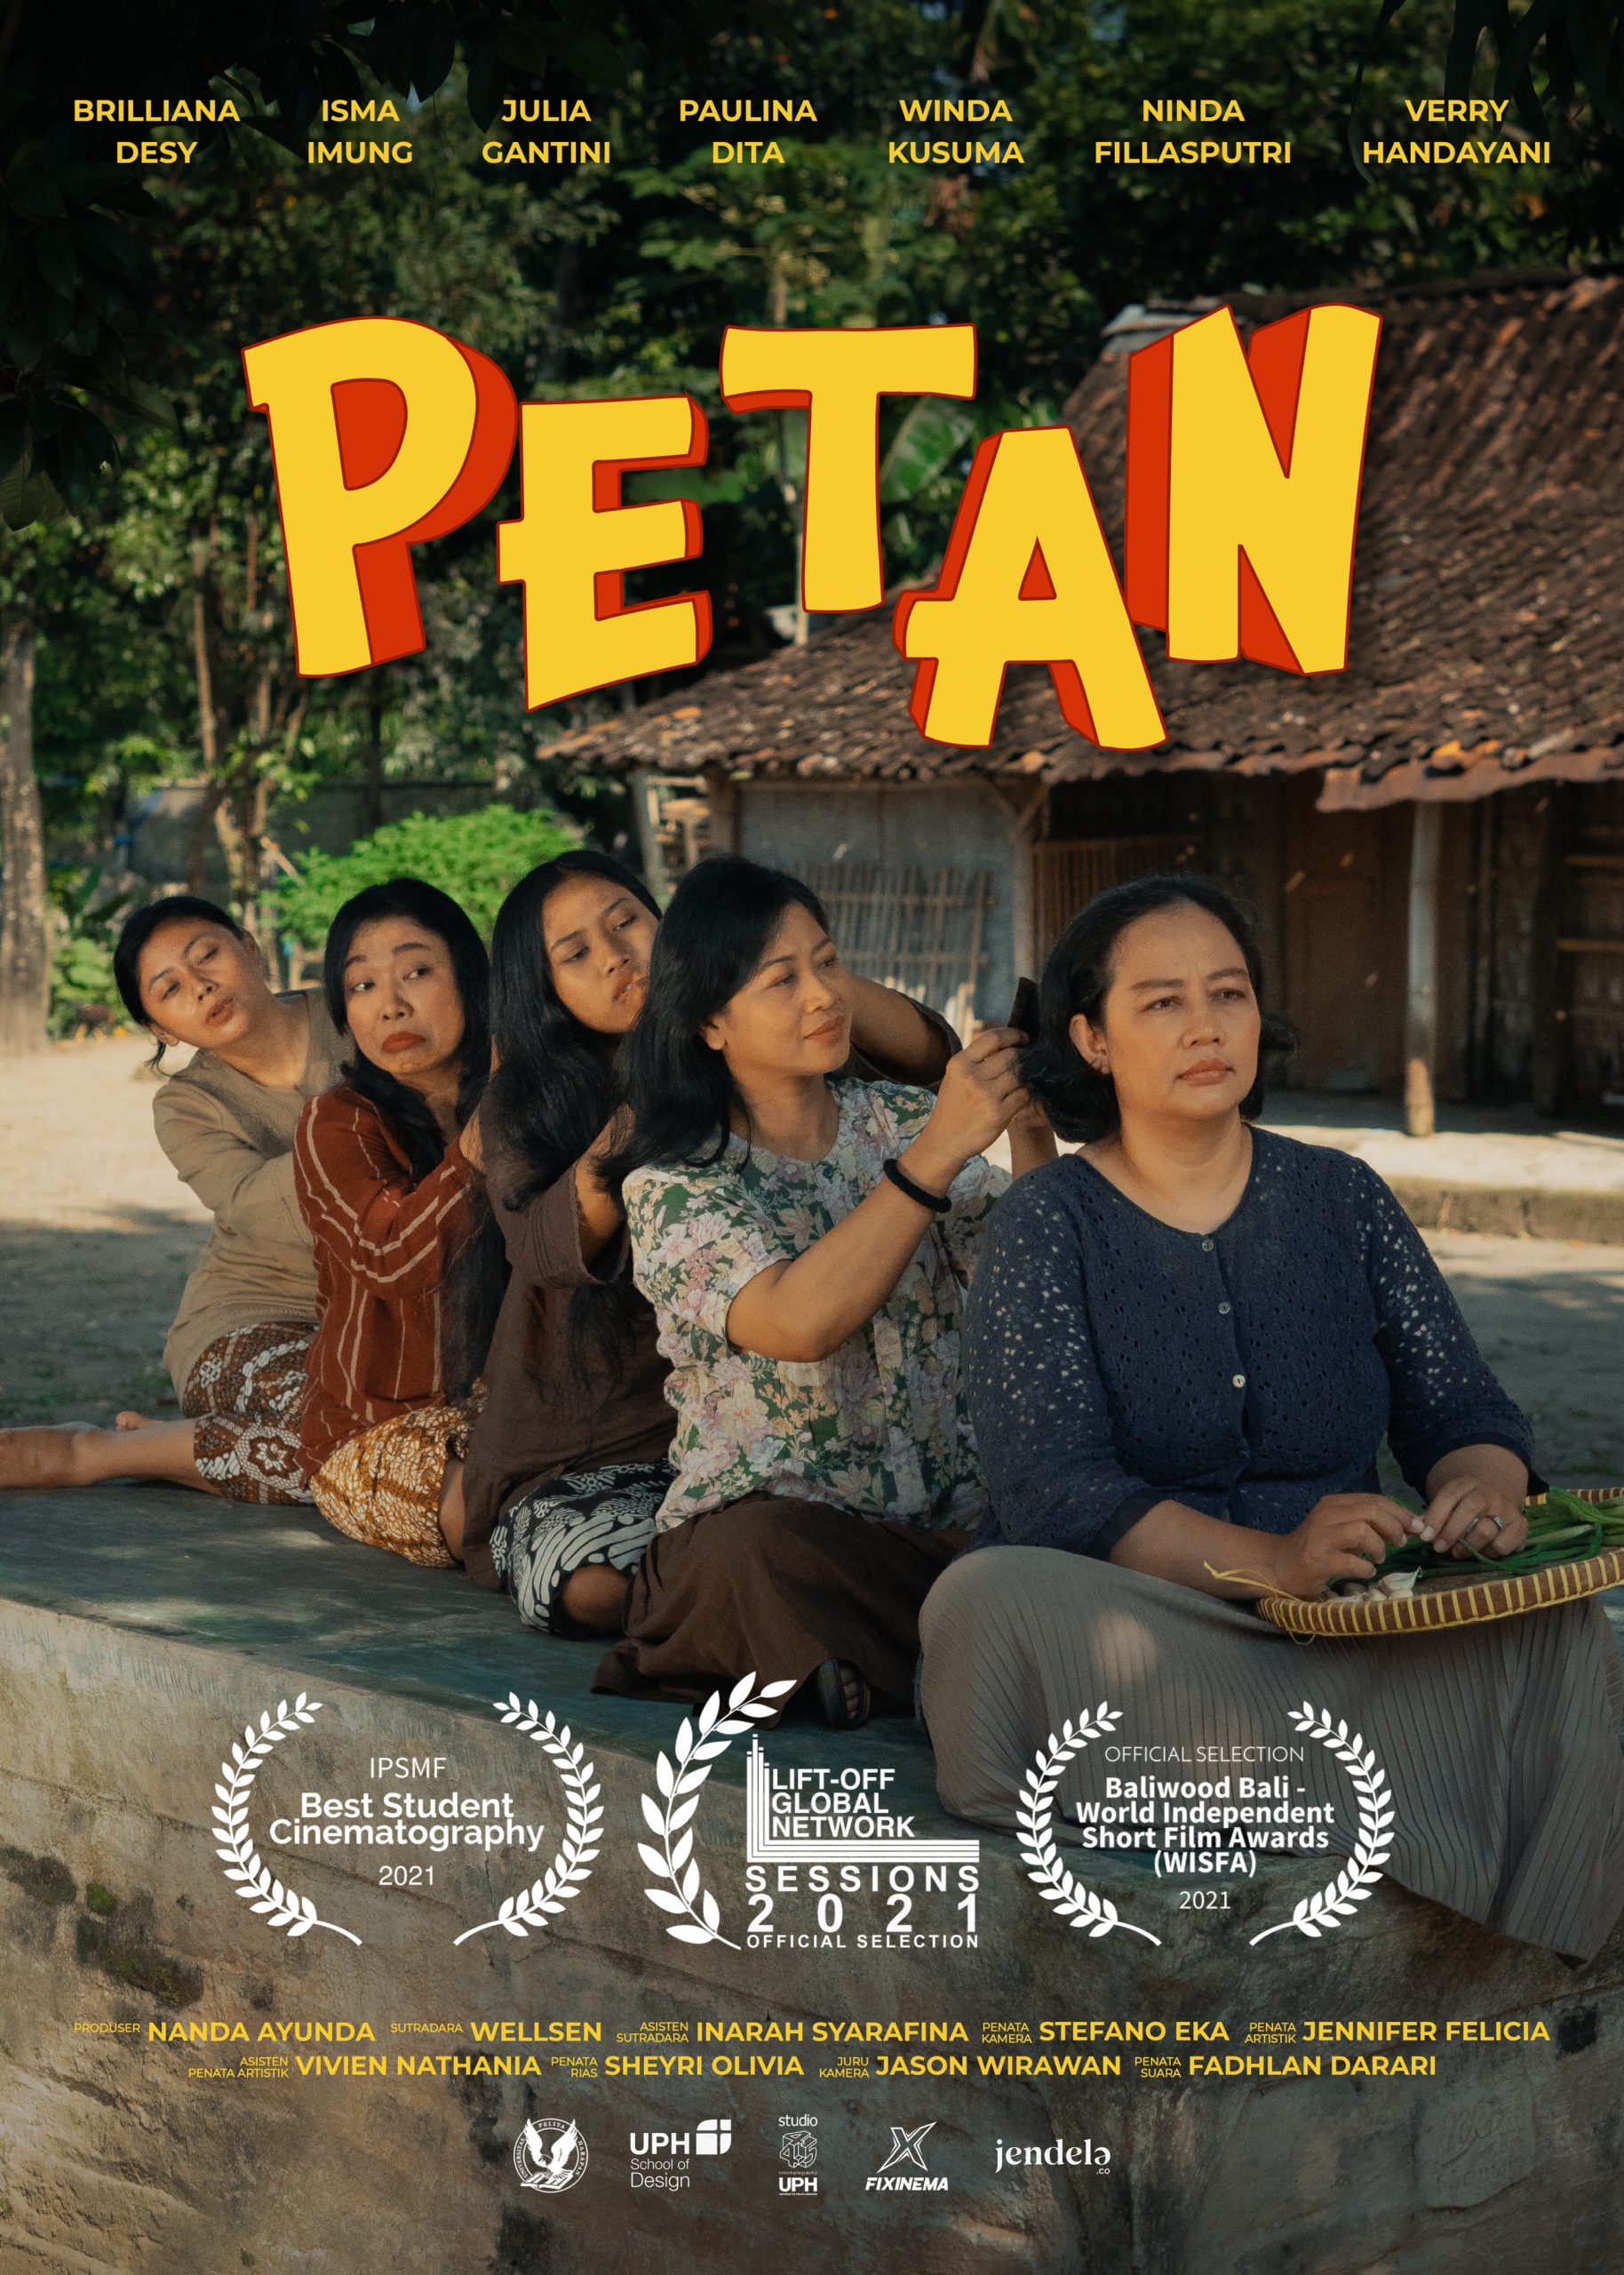 Alumni Sinematografi UPH Raih Juara di Festival Film Pendek Internasional 2021